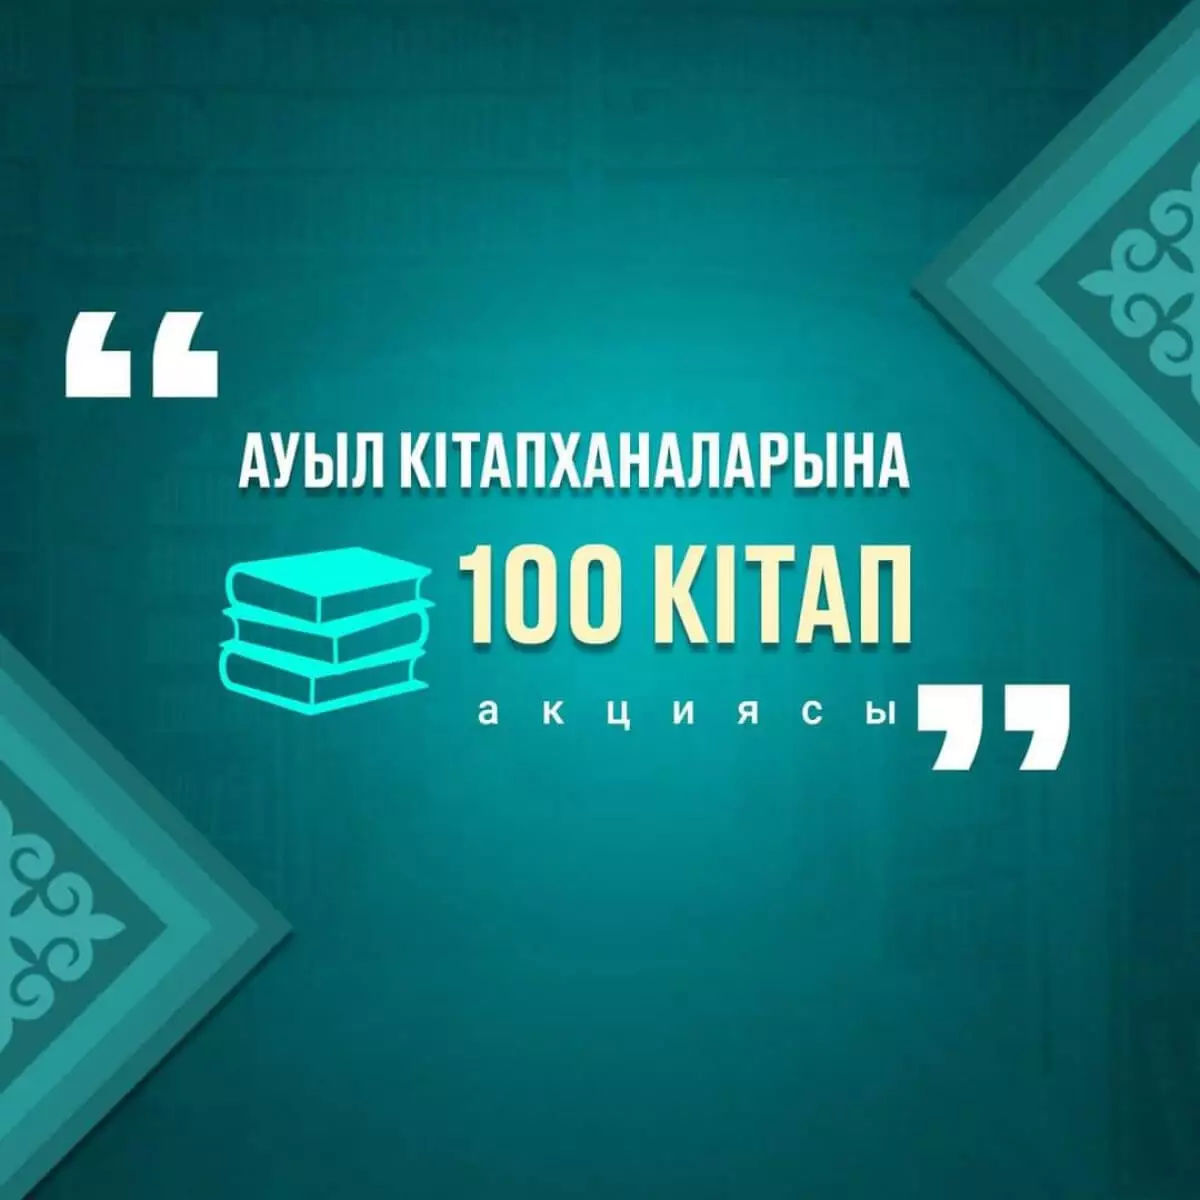 Балаева рассказала, как министры поддержали акцию "100 книг для сельских библиотек"